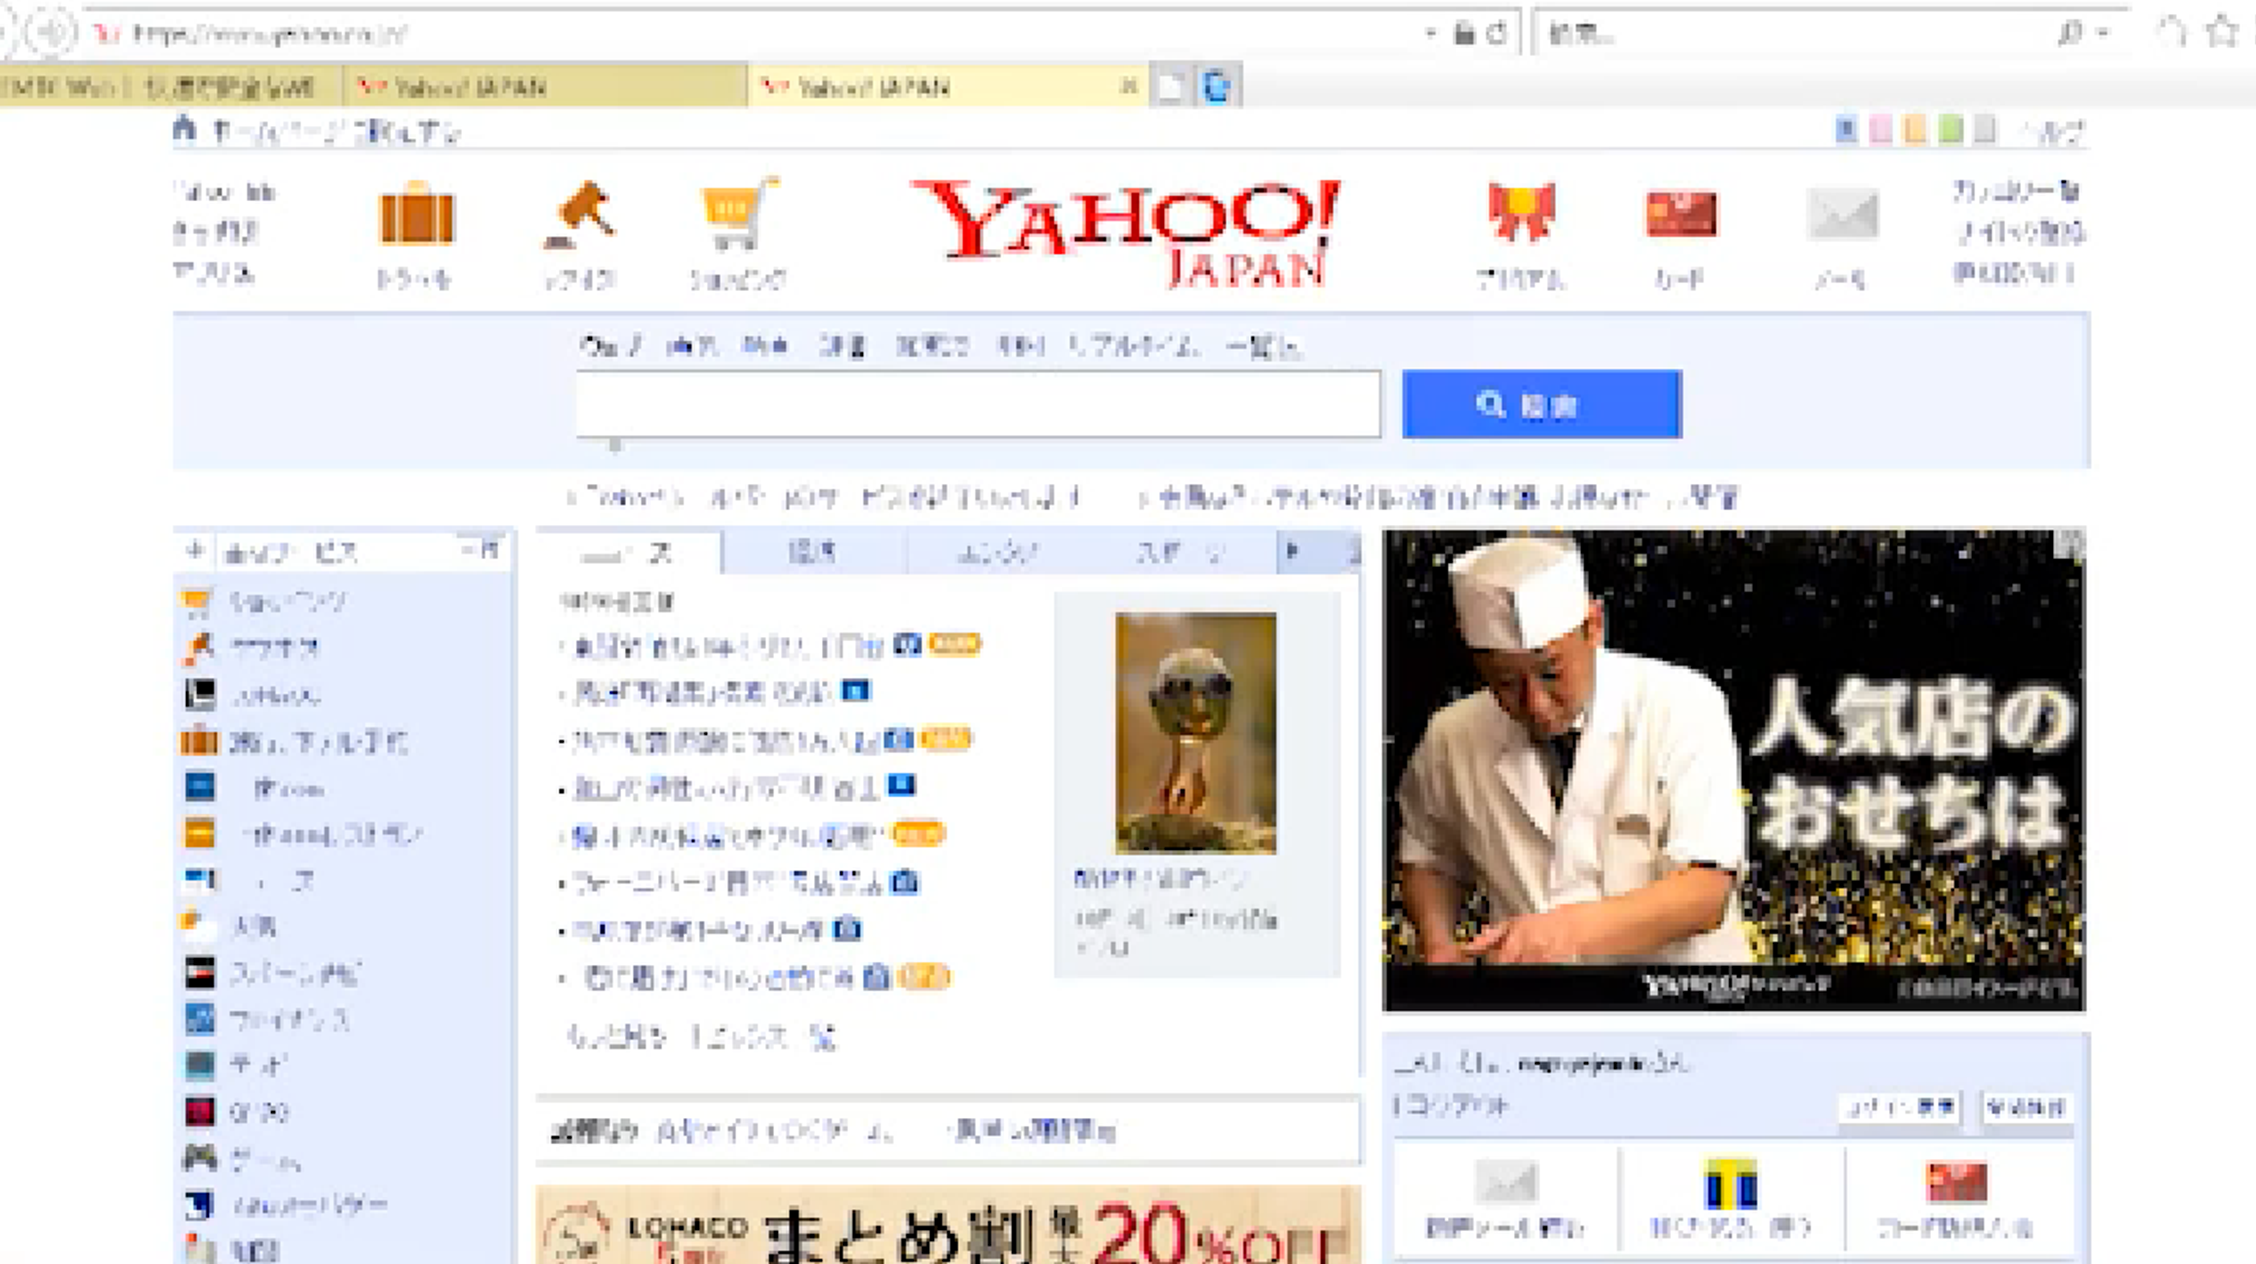 ヤフー Yahoo をホームページに設定する方法 Jemtc パソコンレッスン動画 もっと便利に困ったときに